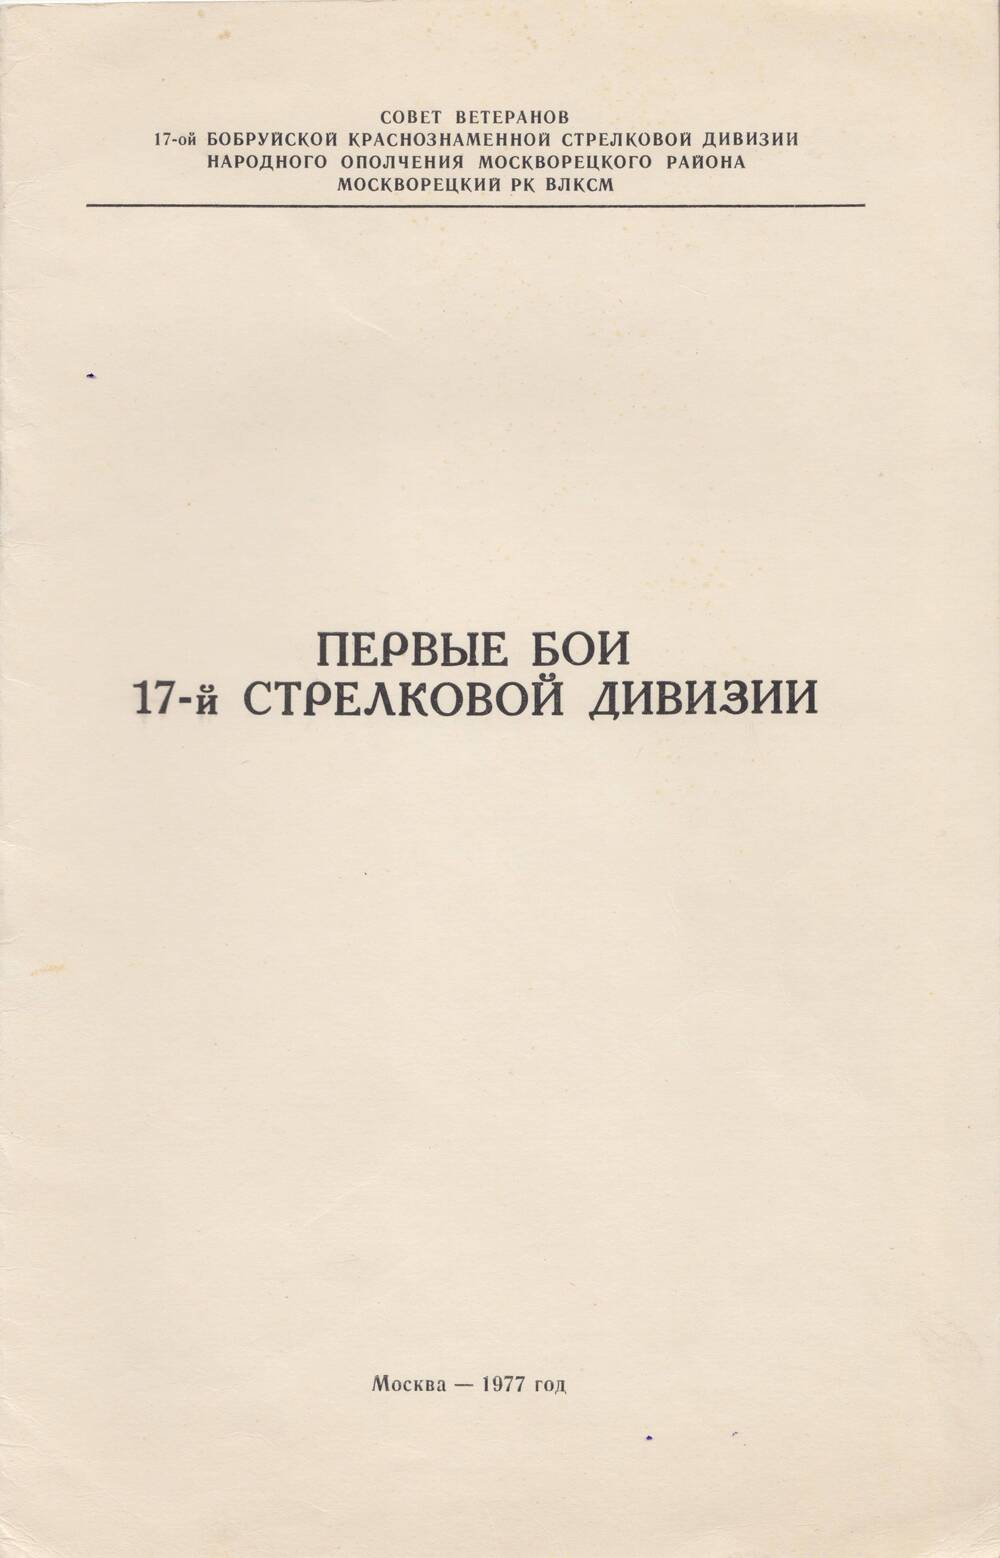 Брошюра Первые бои 17-й стрелковой дивизии, автор - генерал-лейтенант В. Щемелев. Москва, 1977 год.